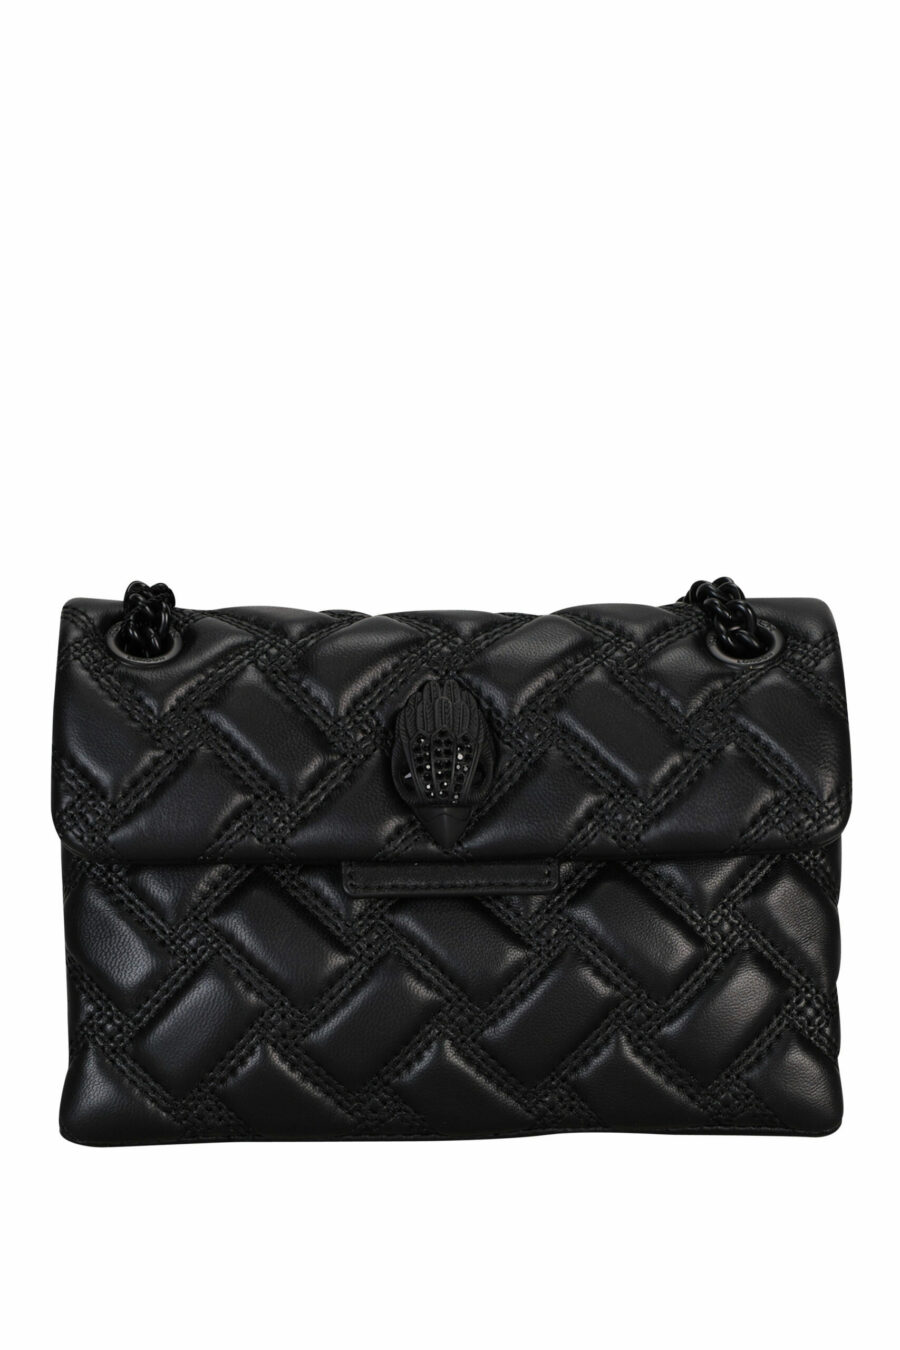 Mini sac à bandoulière noir avec lignes diagonales et logo de l'aigle noir avec cristaux noirs - 5020413709135 scaled